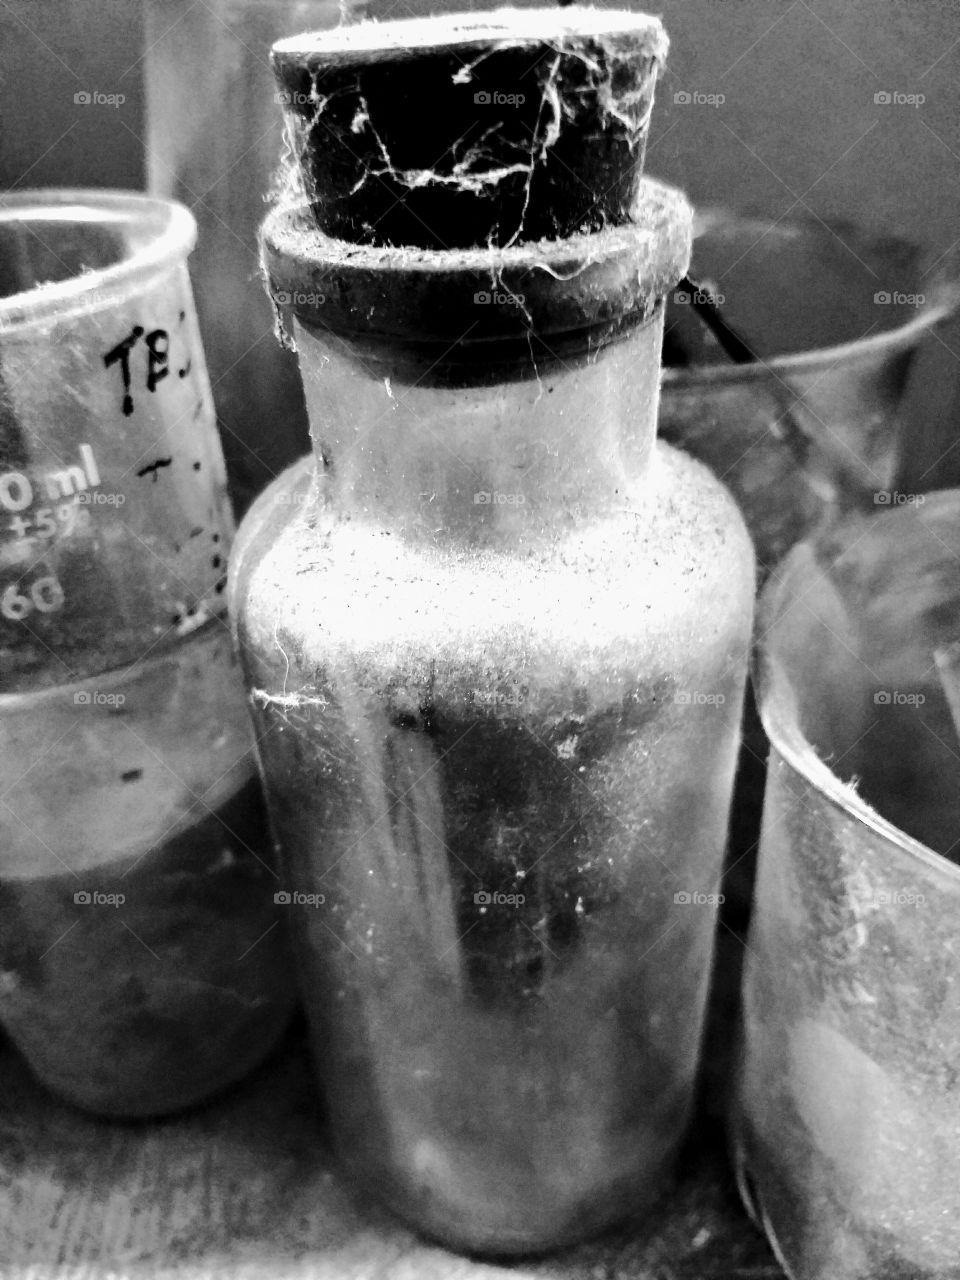 old bottles medicine